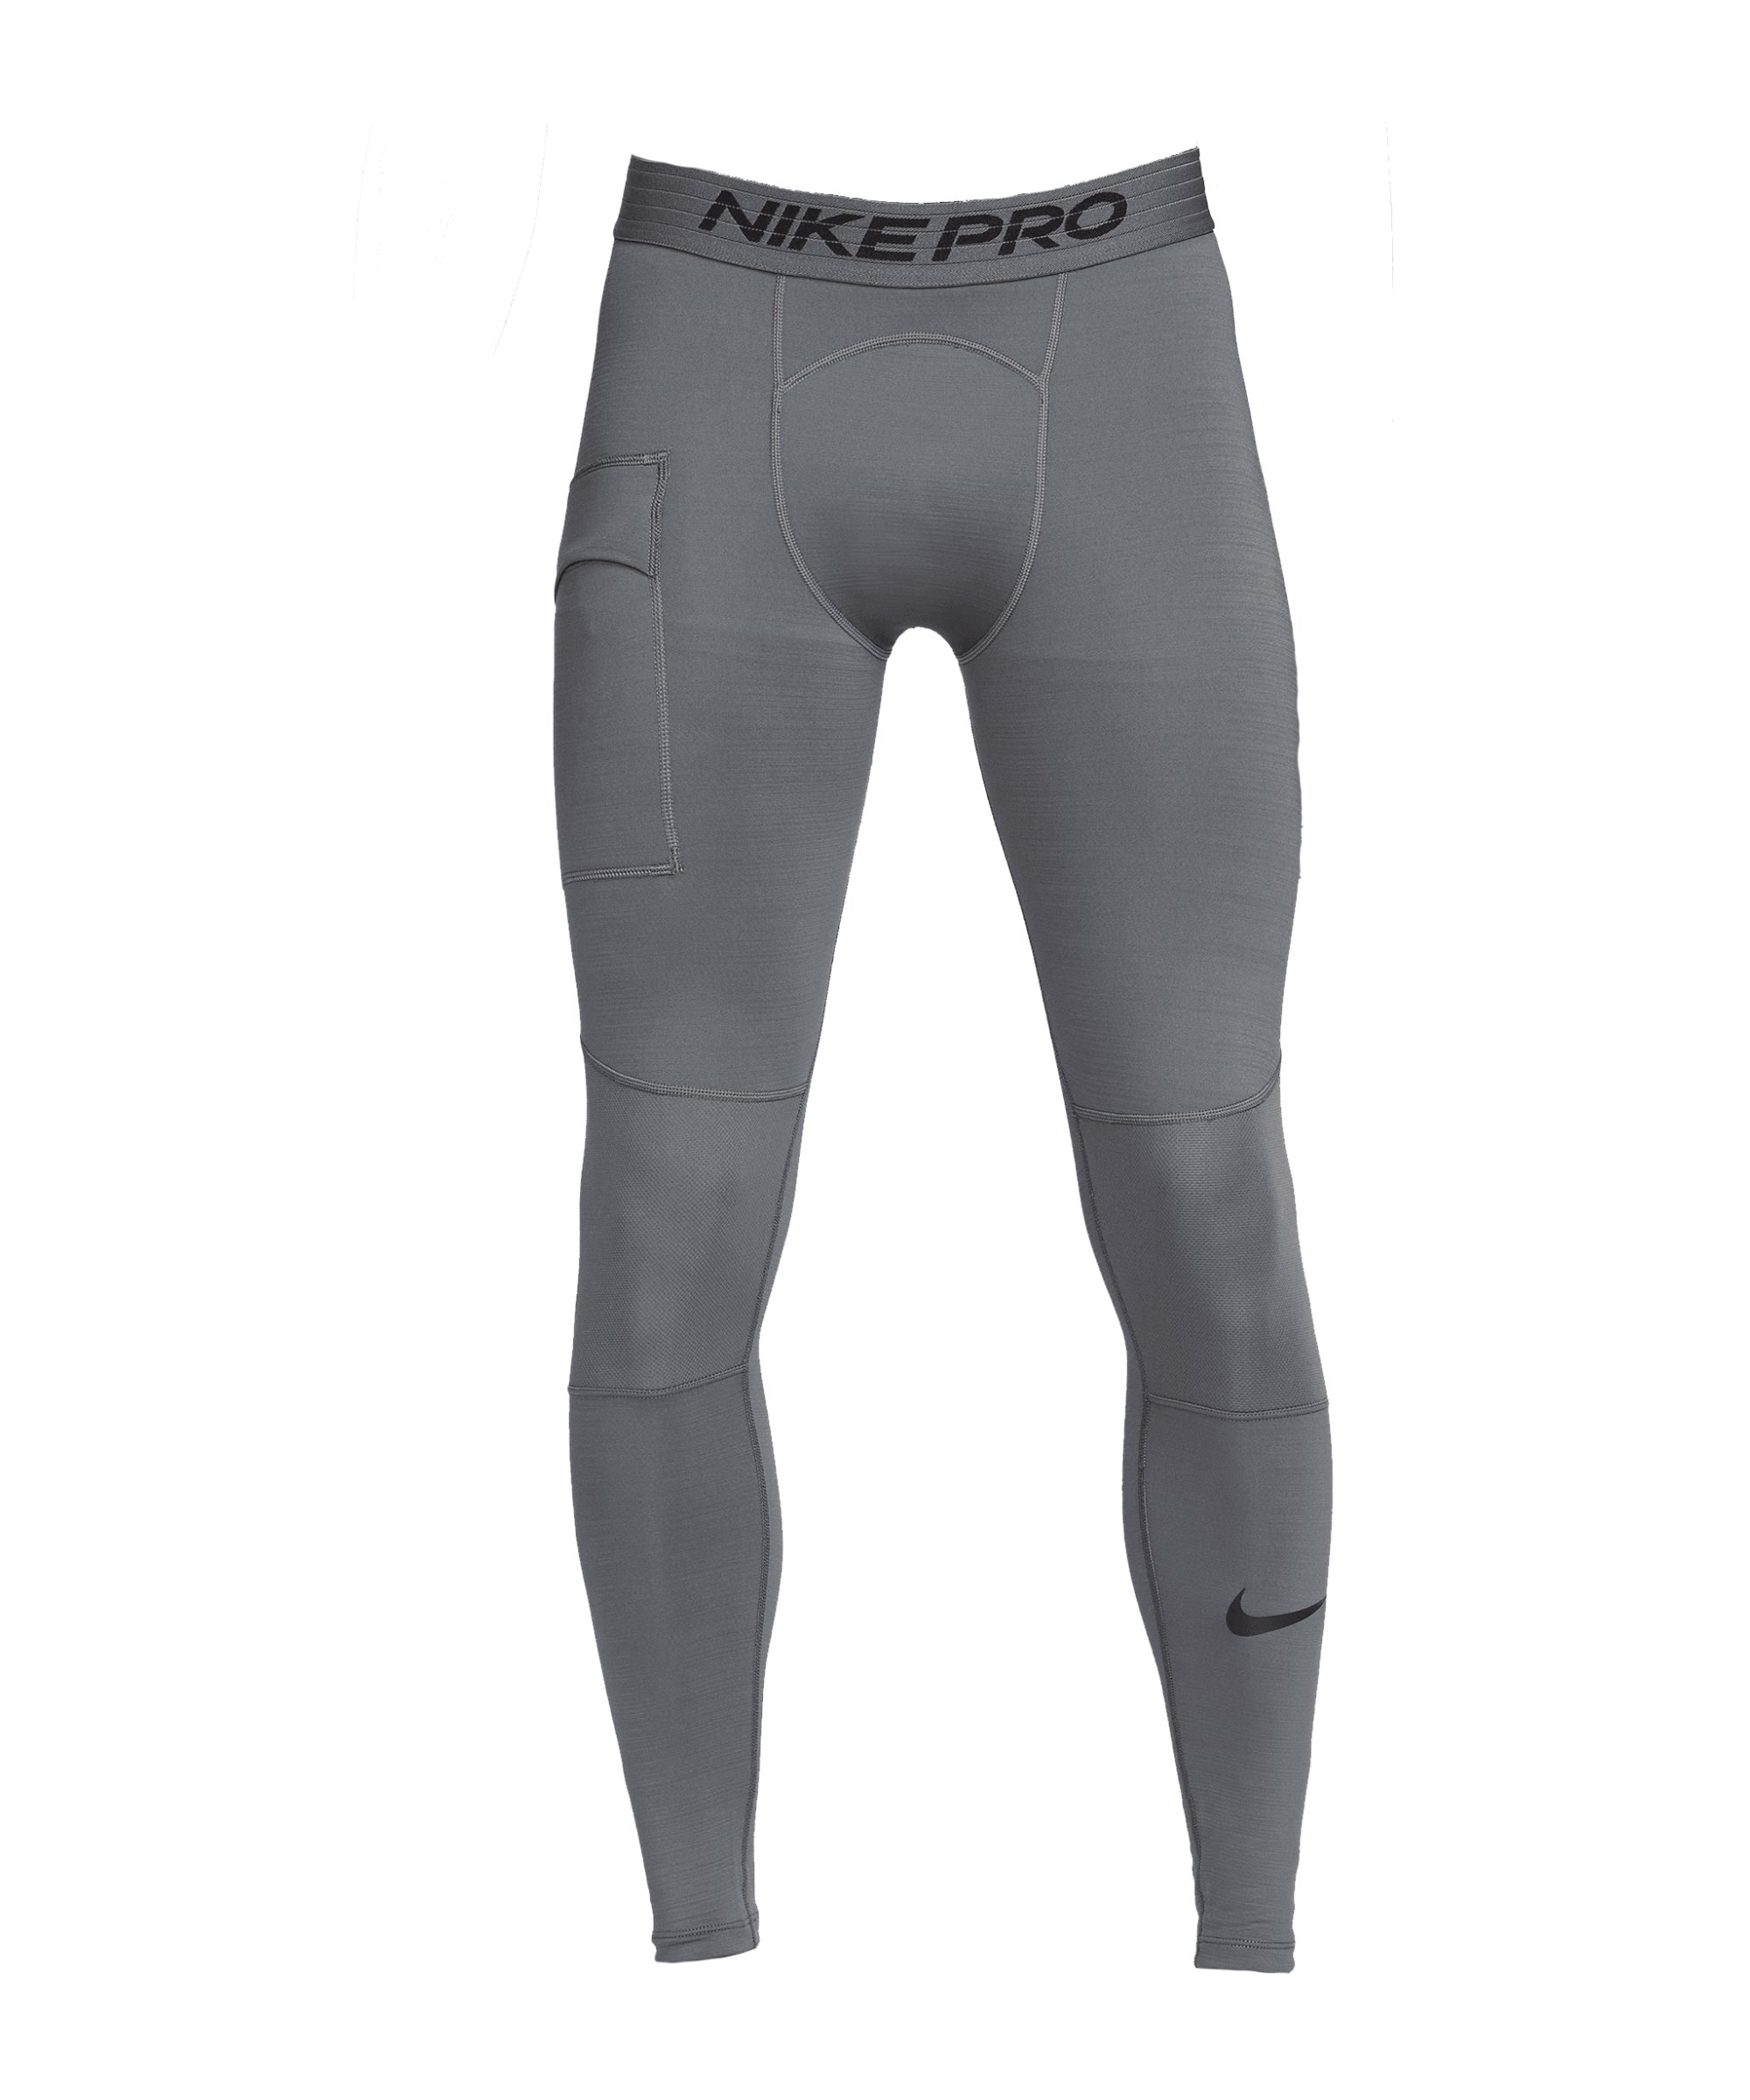 Nike Pro Warm Tight Grau Schwarz F068 - grau